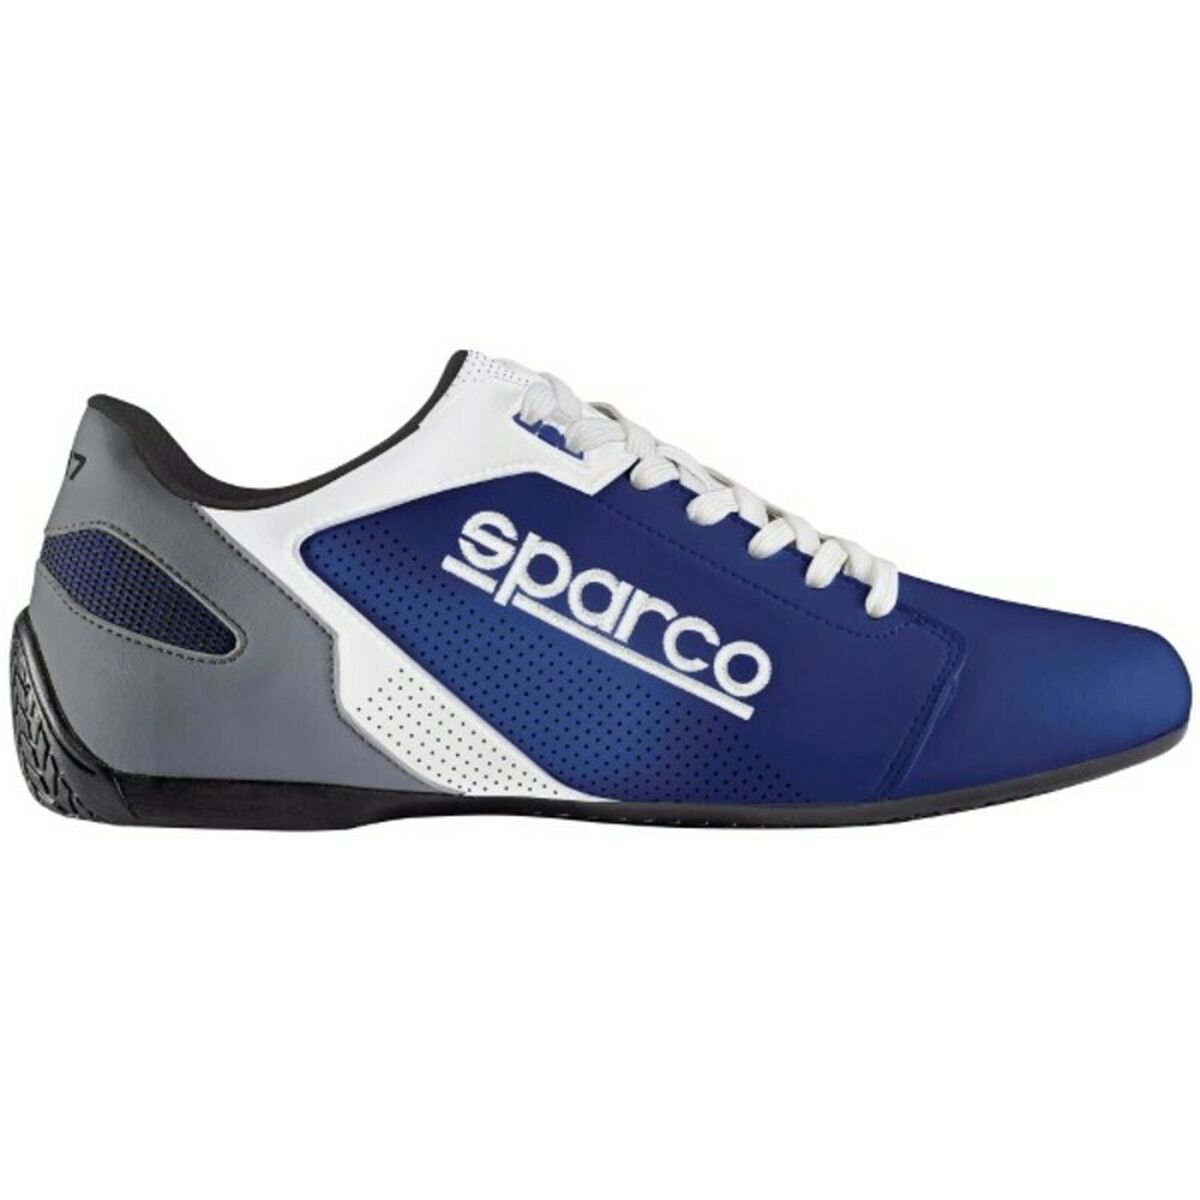 Chaussures casual Sparco SL-17 Bleu / Blanc